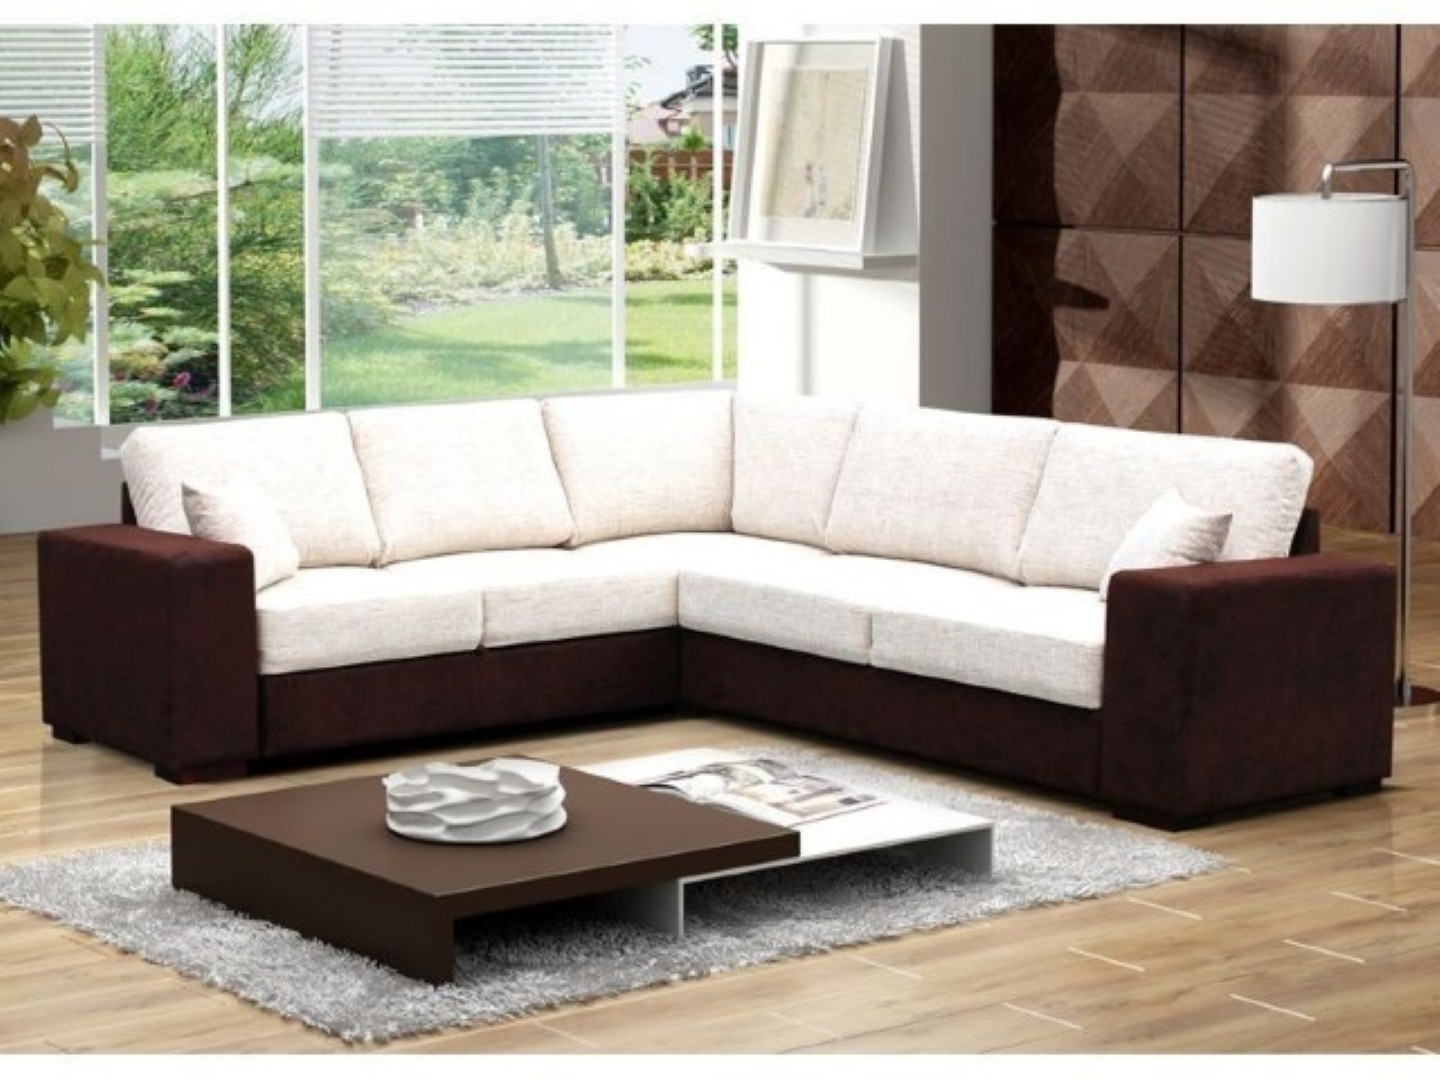 Sofa giường – sự lựa chọn hoàn hảo cho không gian nhà Việt